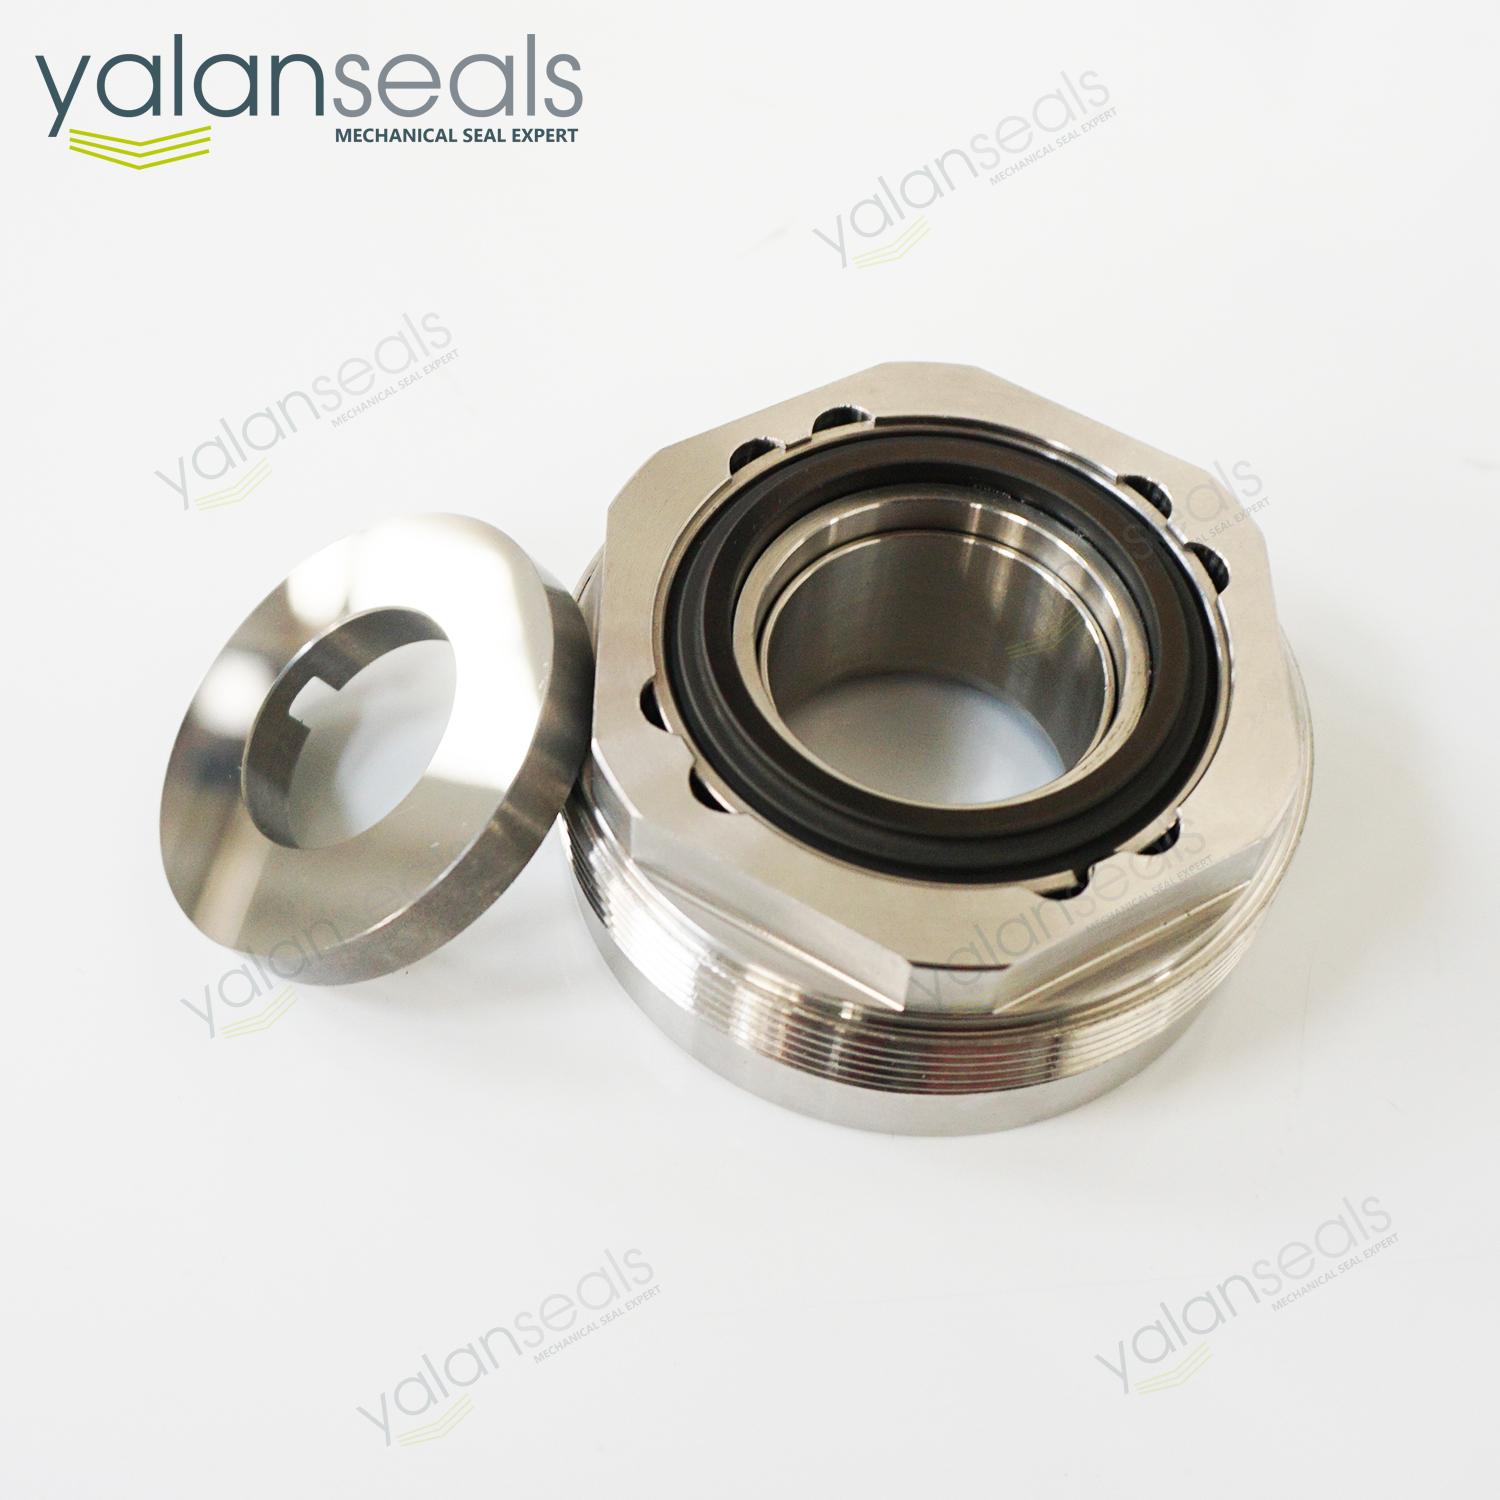 YALAN 800DP Metal Bellow Mechanical Seal for Vanzetti Cryogenic Pumps